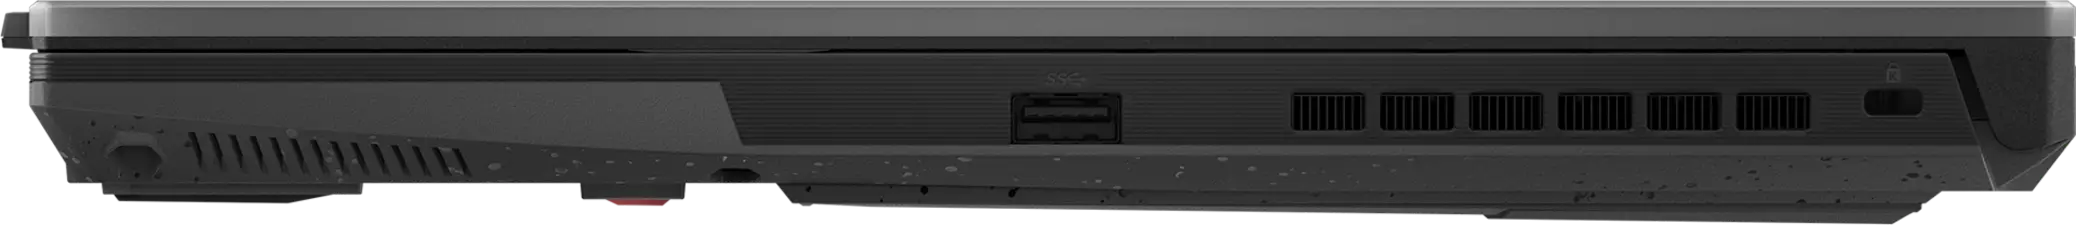 ASUS TUF Gaming F15 Laptop - 16GB - 15.6 Inch